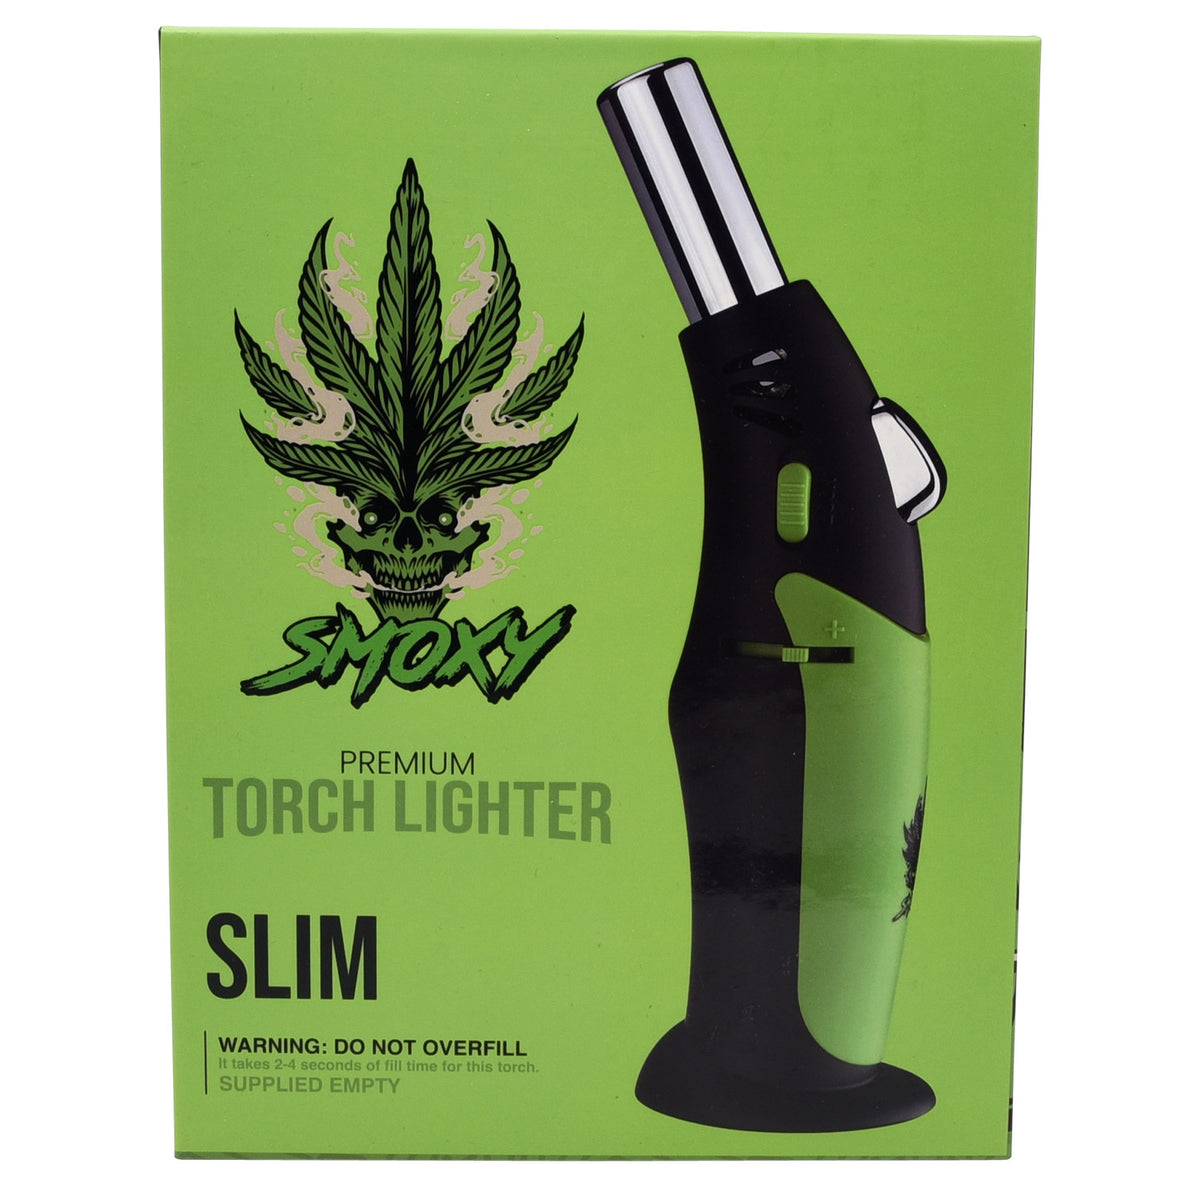 Smoxy Slim Torch